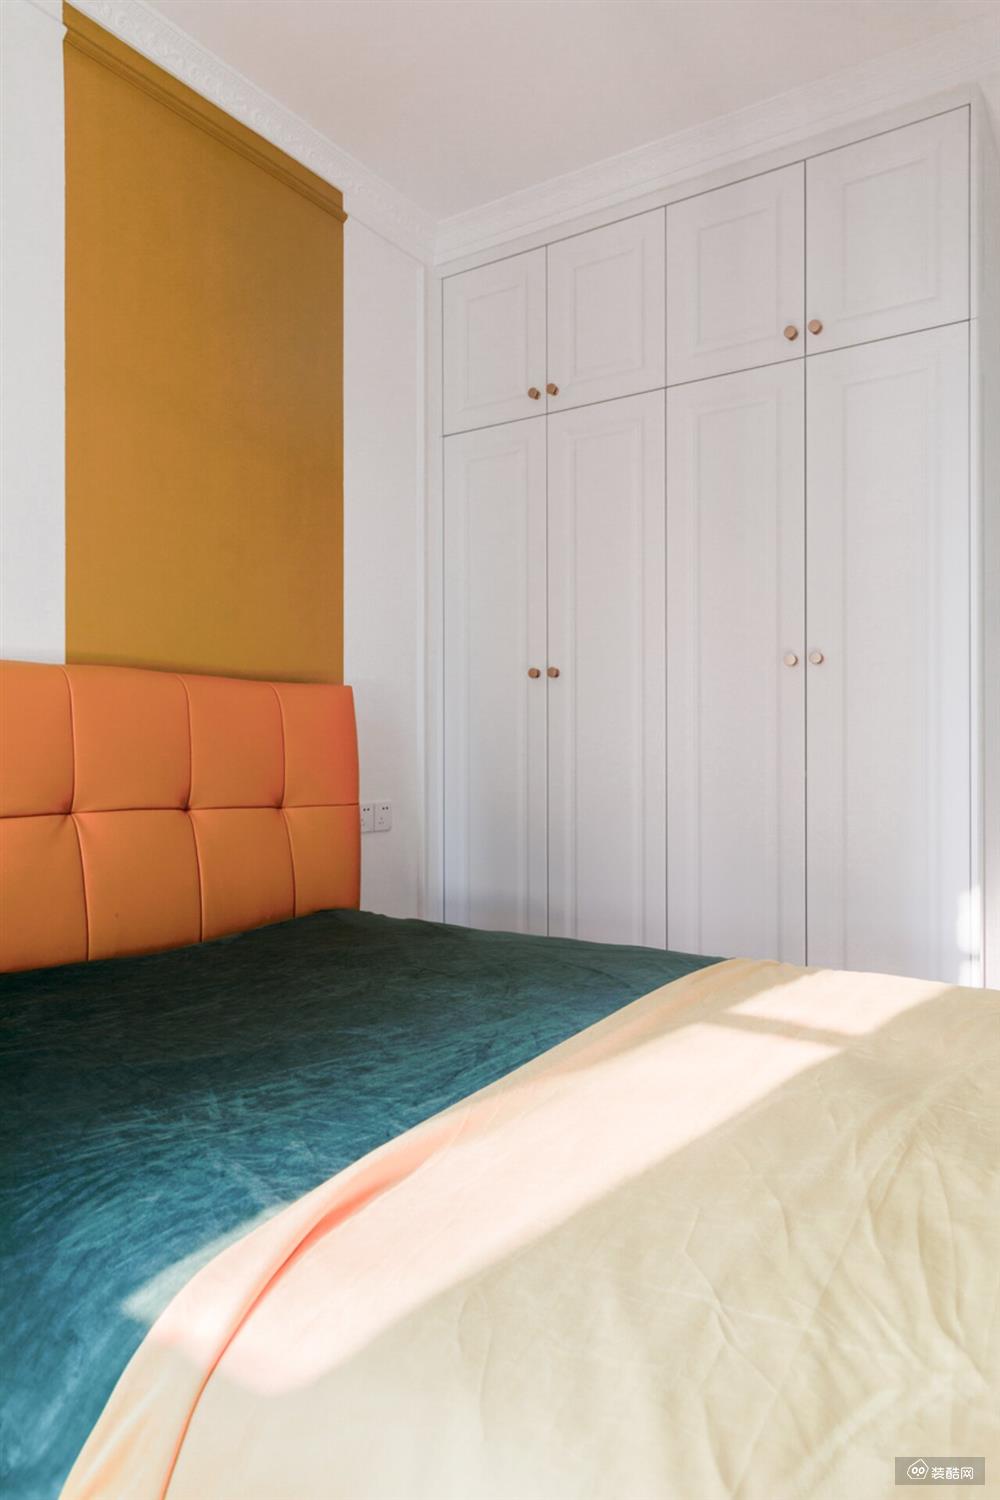 次卧墙面做了橙色块拼色设计，让墙面不再单调。同色系软包床背+拉扣工艺，大气舒适。白色衣柜上搭配了小巧圆润的黄铜拉手，显得俏皮可爱。